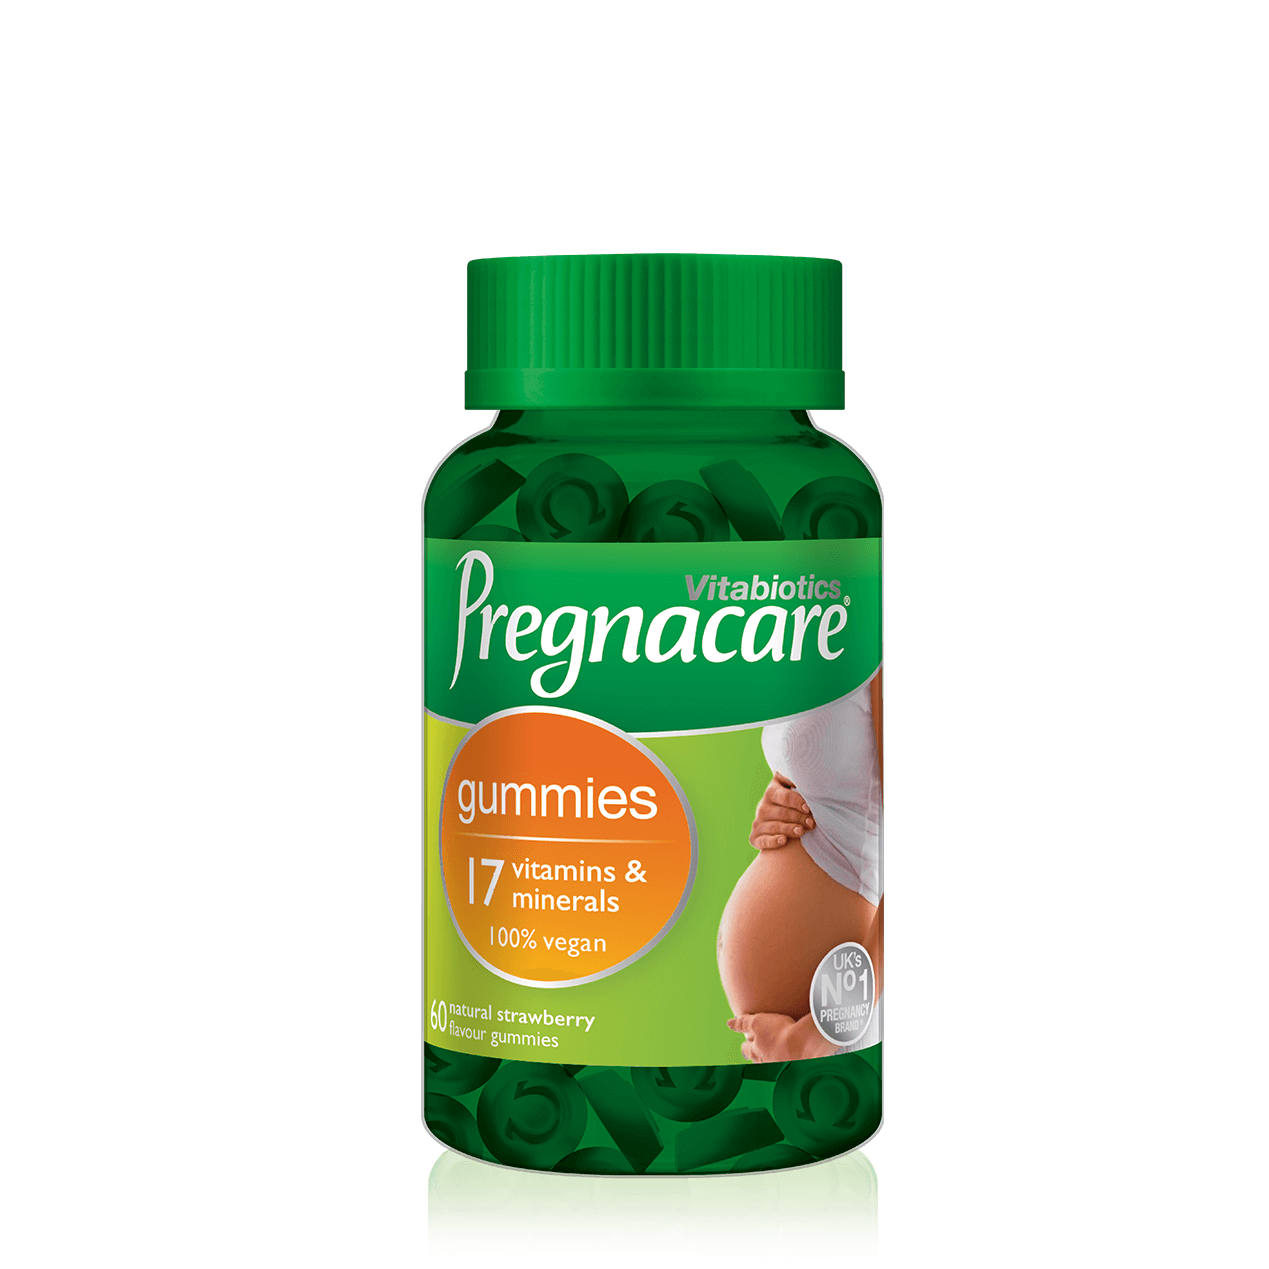 Pregnacare Gummies - Vegan prenatal vitamins